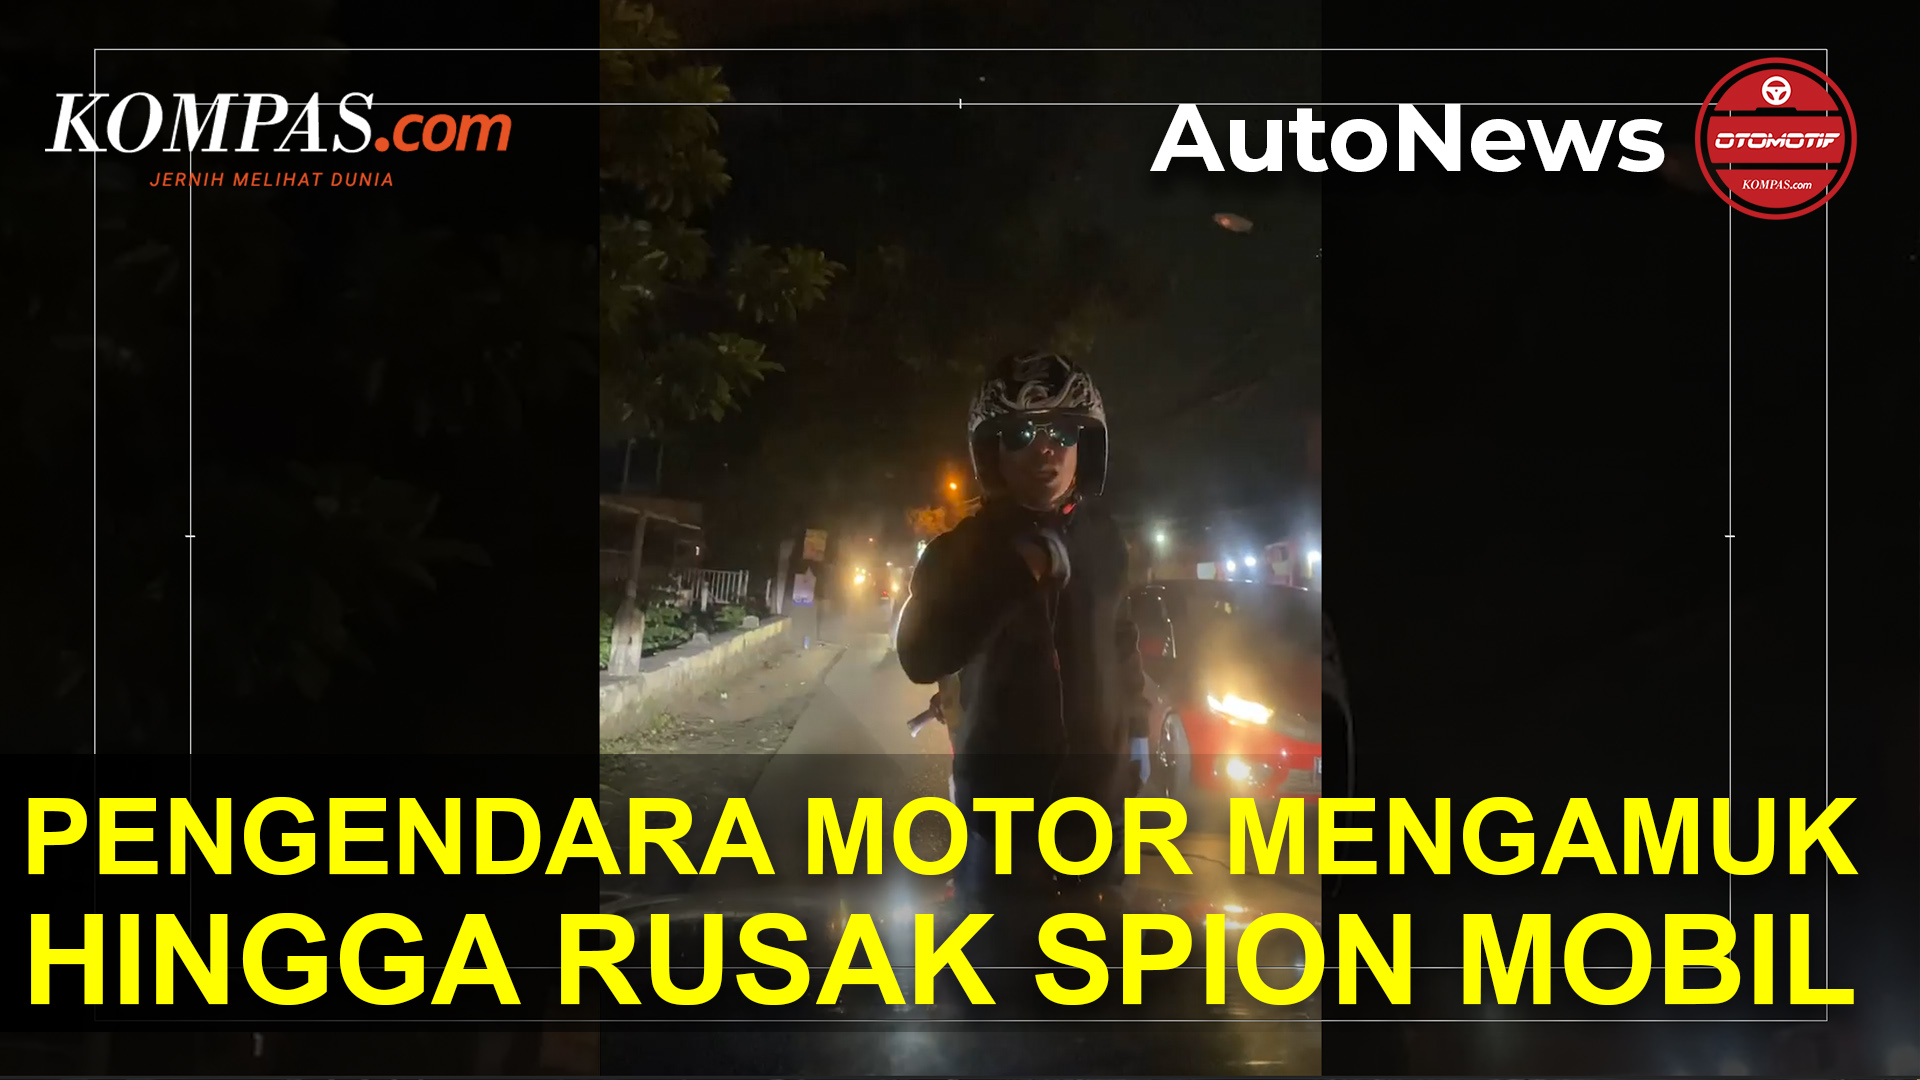 Pengendara Motor Mengamuk hingga Rusak Spion Mobil di Depok. Ini Acaman Hukumannya!